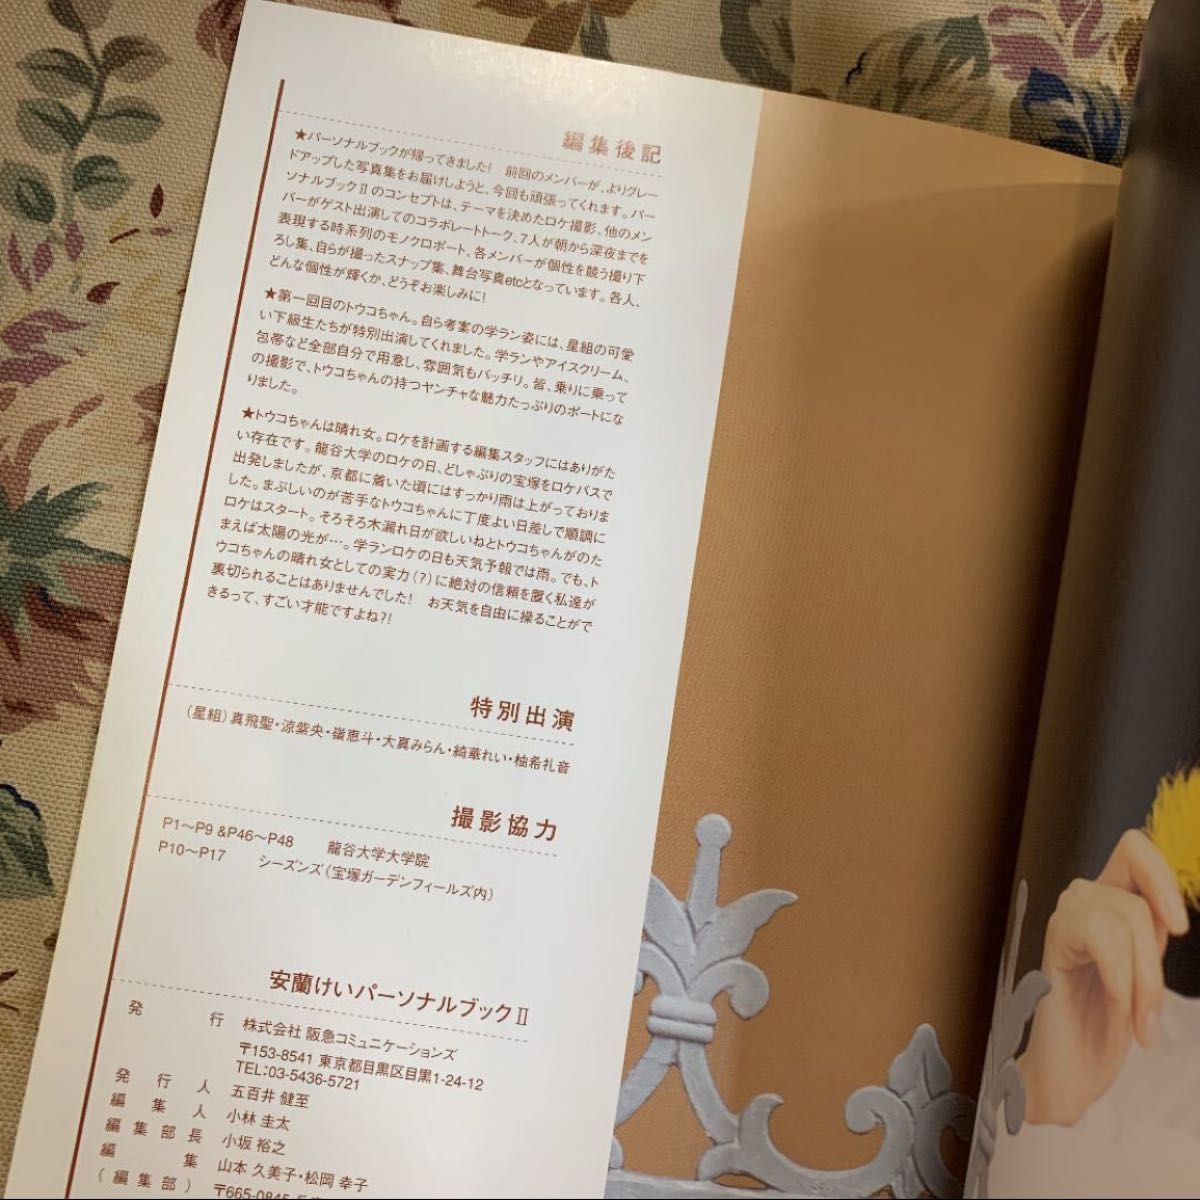 「安蘭けい」宝塚 パーソナルブックⅡ